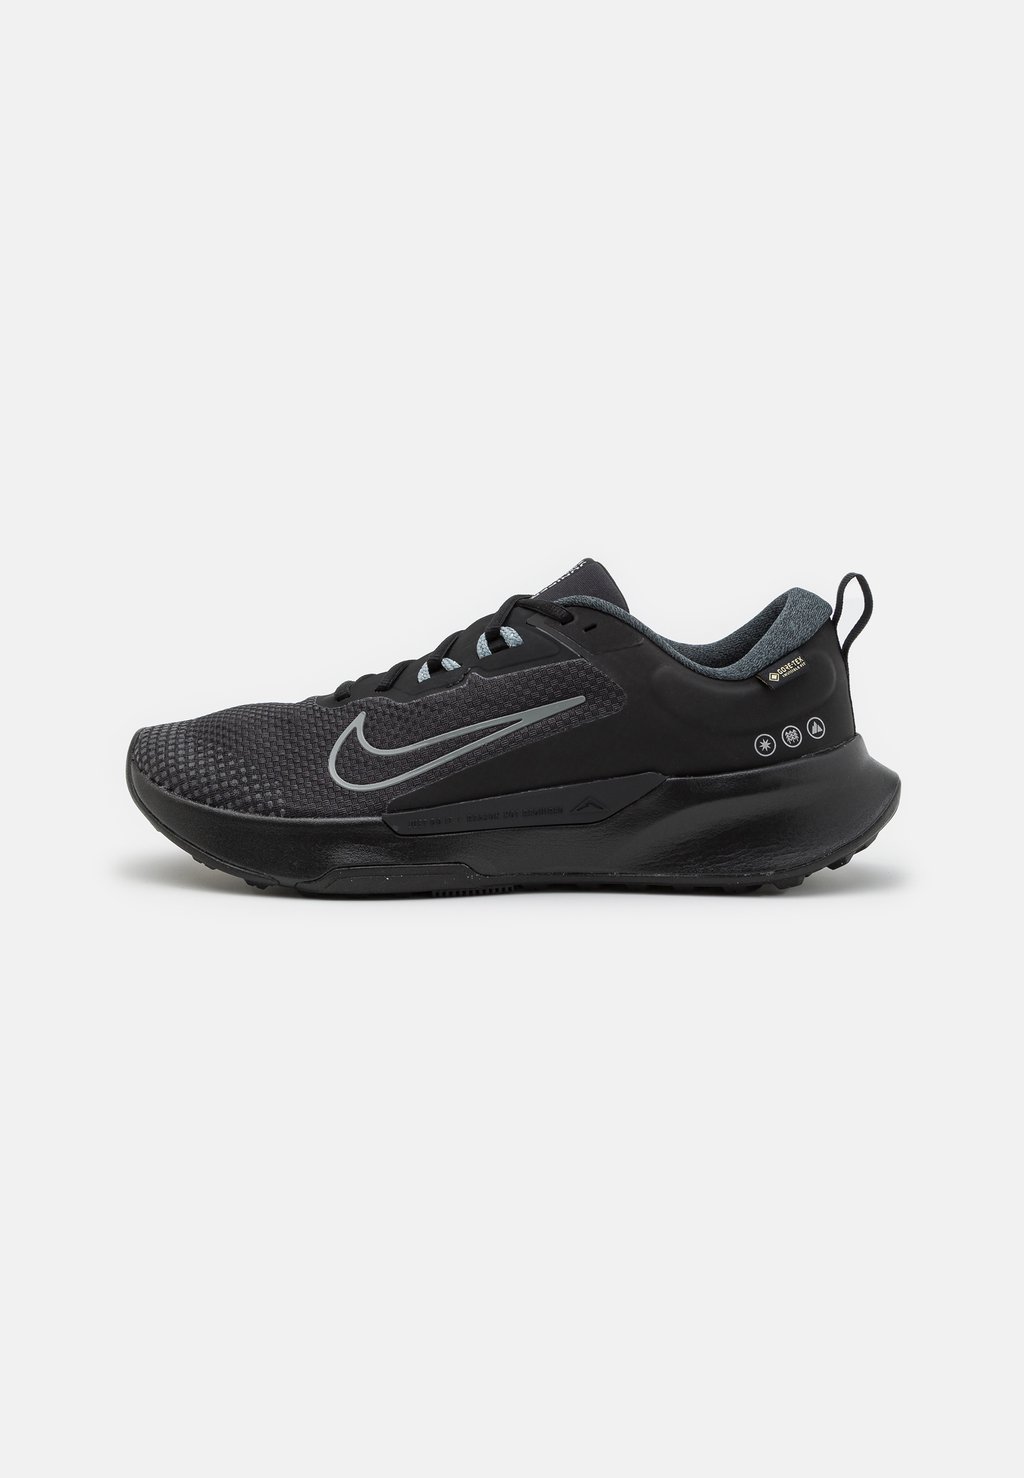 Кроссовки для бега по пересеченной местности Juniper Gtx Nike, цвет black/cool grey/anthracite